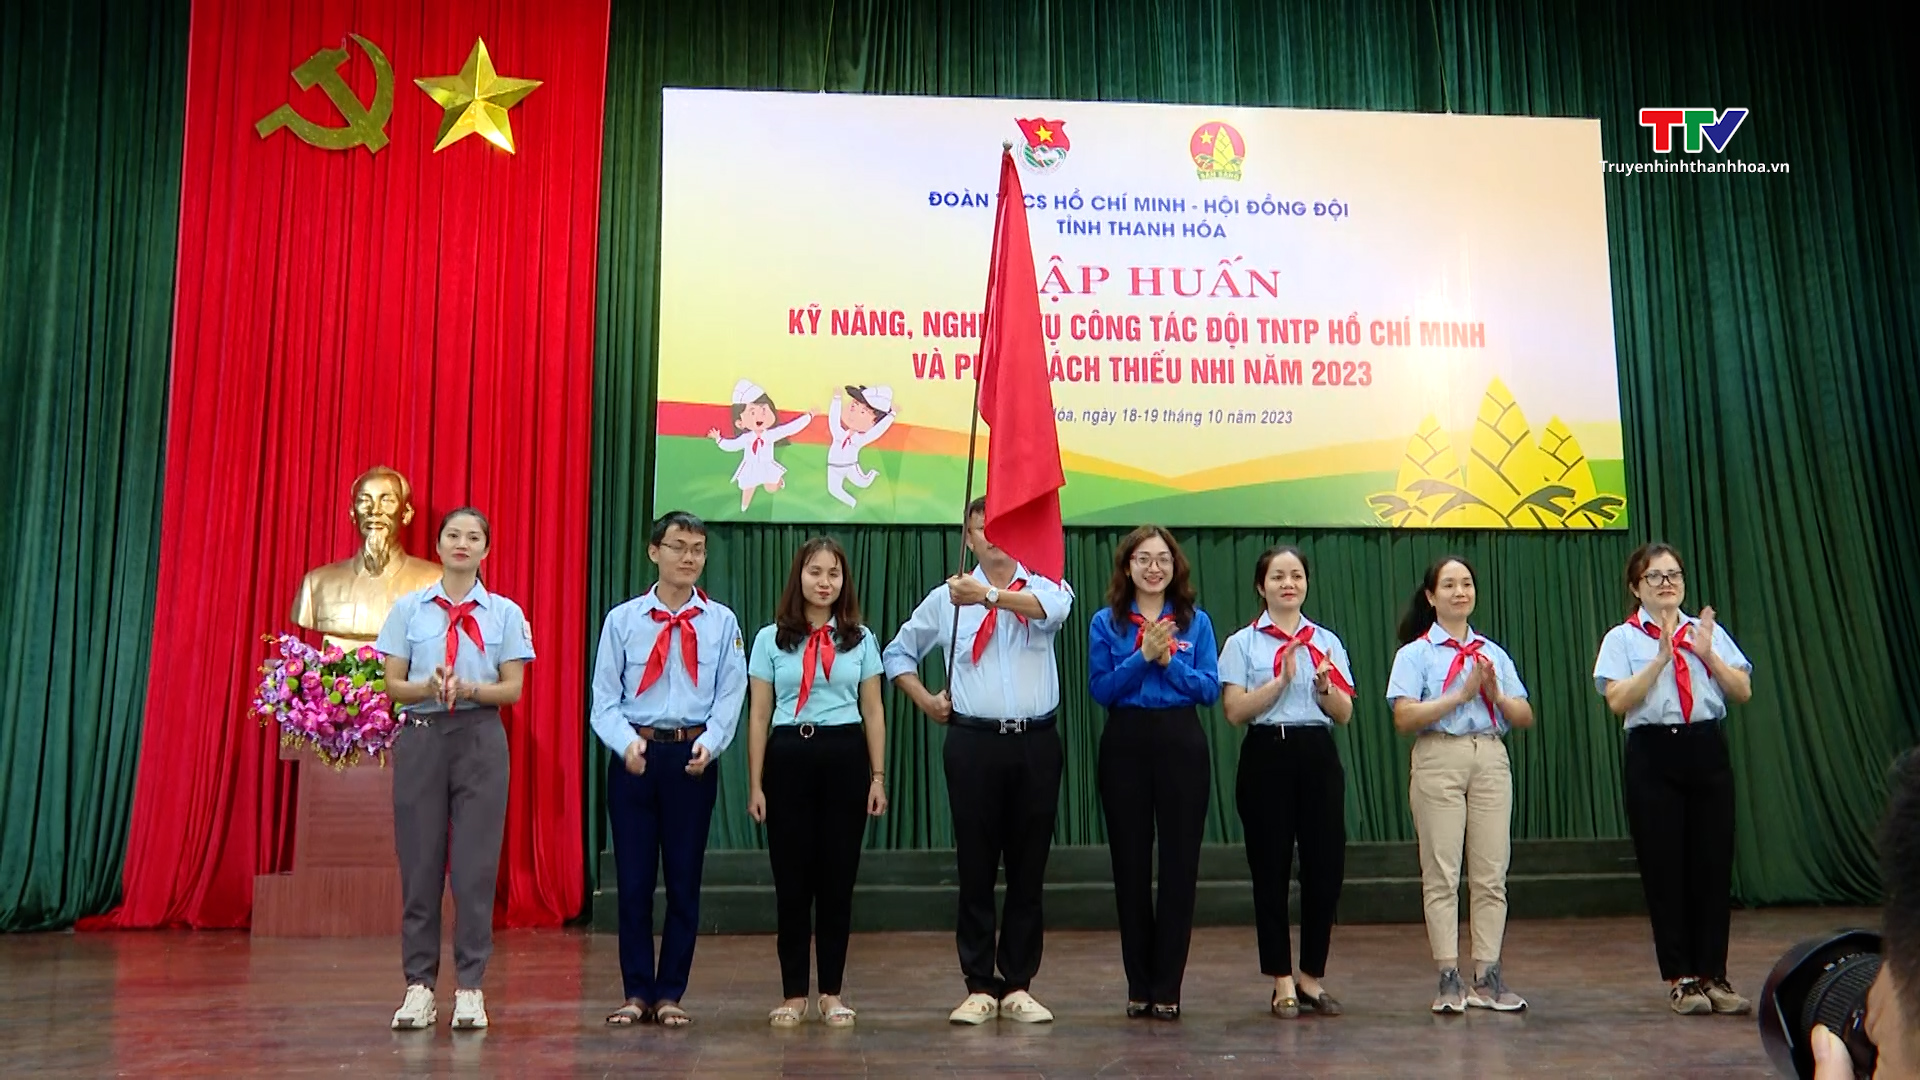 Tỉnh đoàn Thanh Hóa tổ chức “Trại huấn luyện Nguyễn Bá Ngọc”năm 2023 - Ảnh 2.